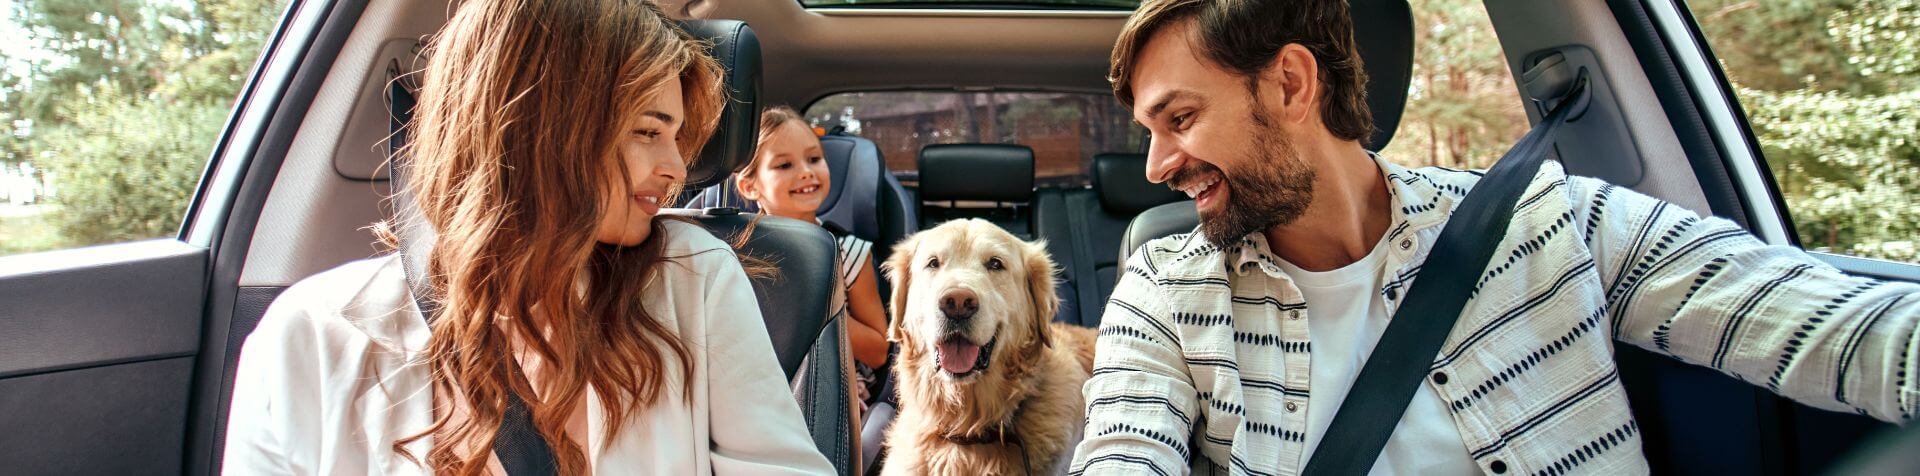 chien dans une voiture avec sa famille